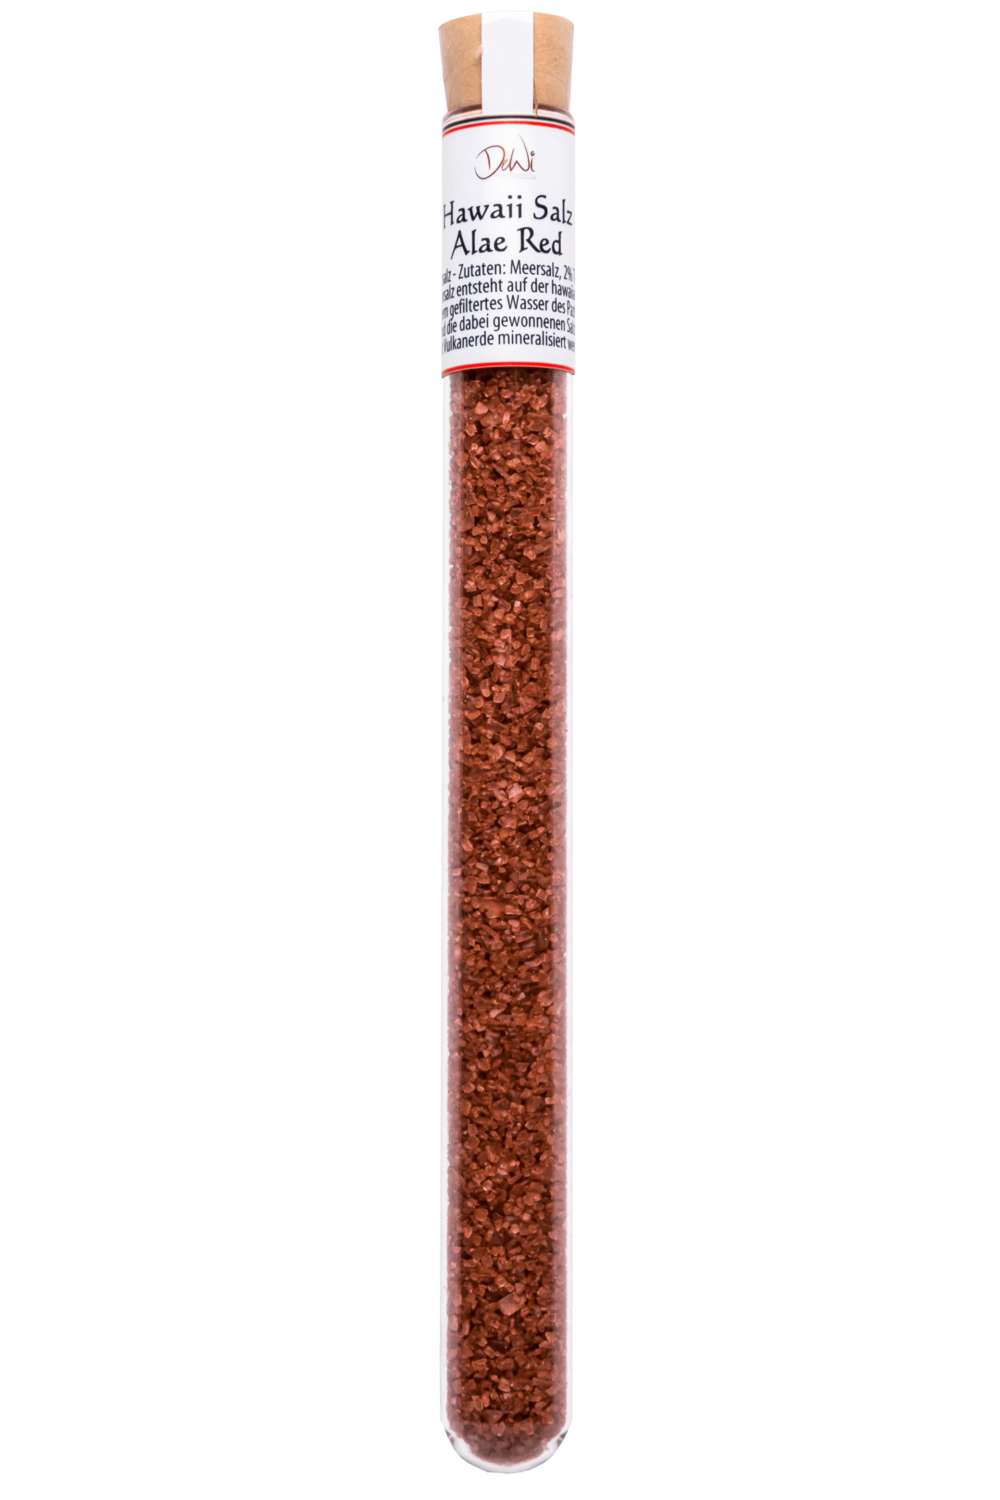 Hawai Salz "Alae Red" im Reagenzglas - Inhalt 23 g (128,30 €/kg)